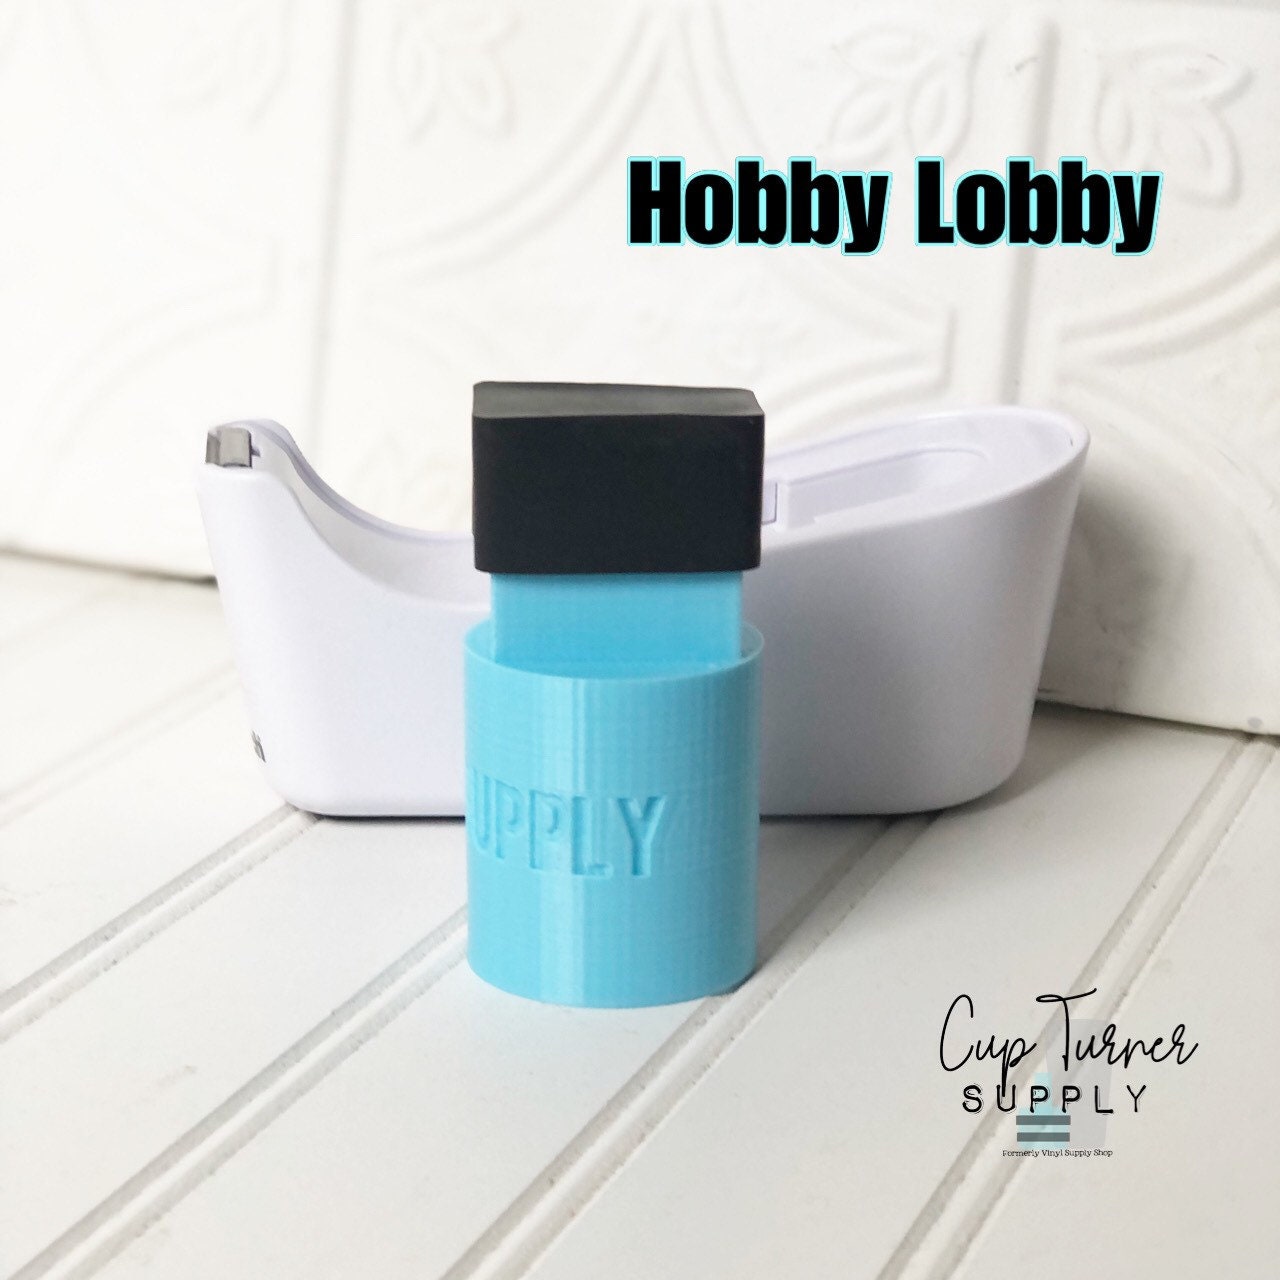 Epoxy Dye Resin, Hobby Lobby